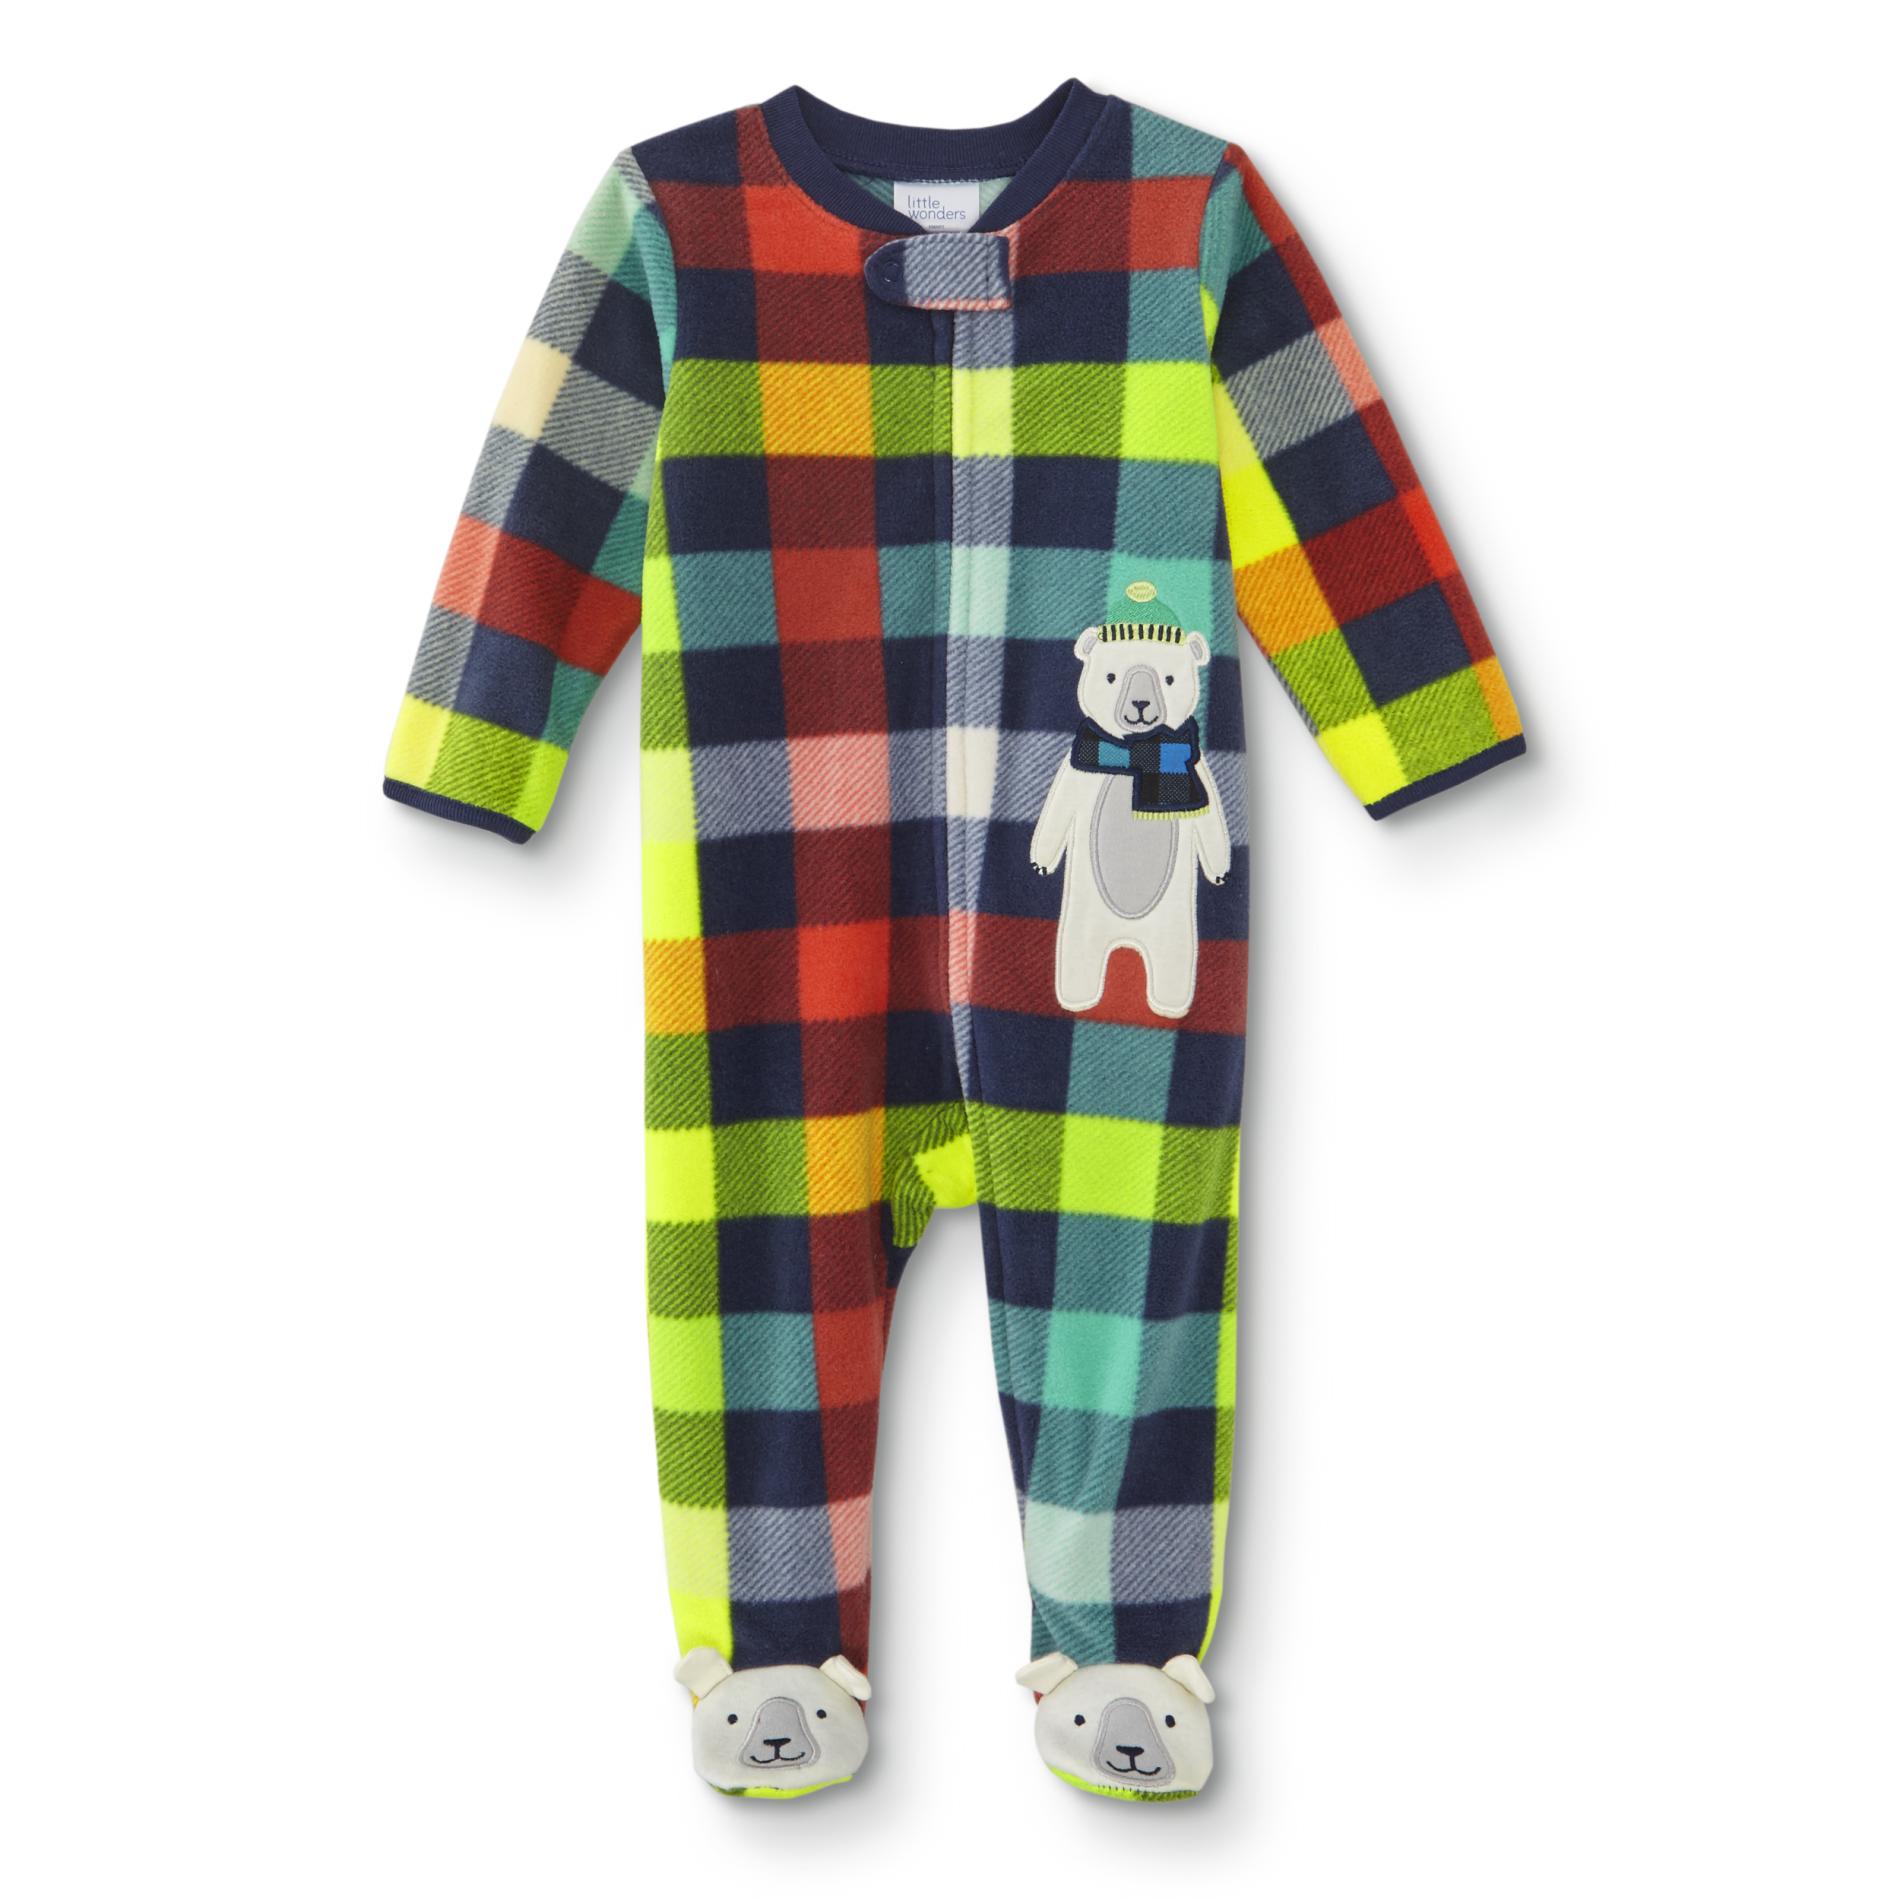 Little Wonders Infant Boys' Footed Sleeper Pajamas - Plaid/Bear